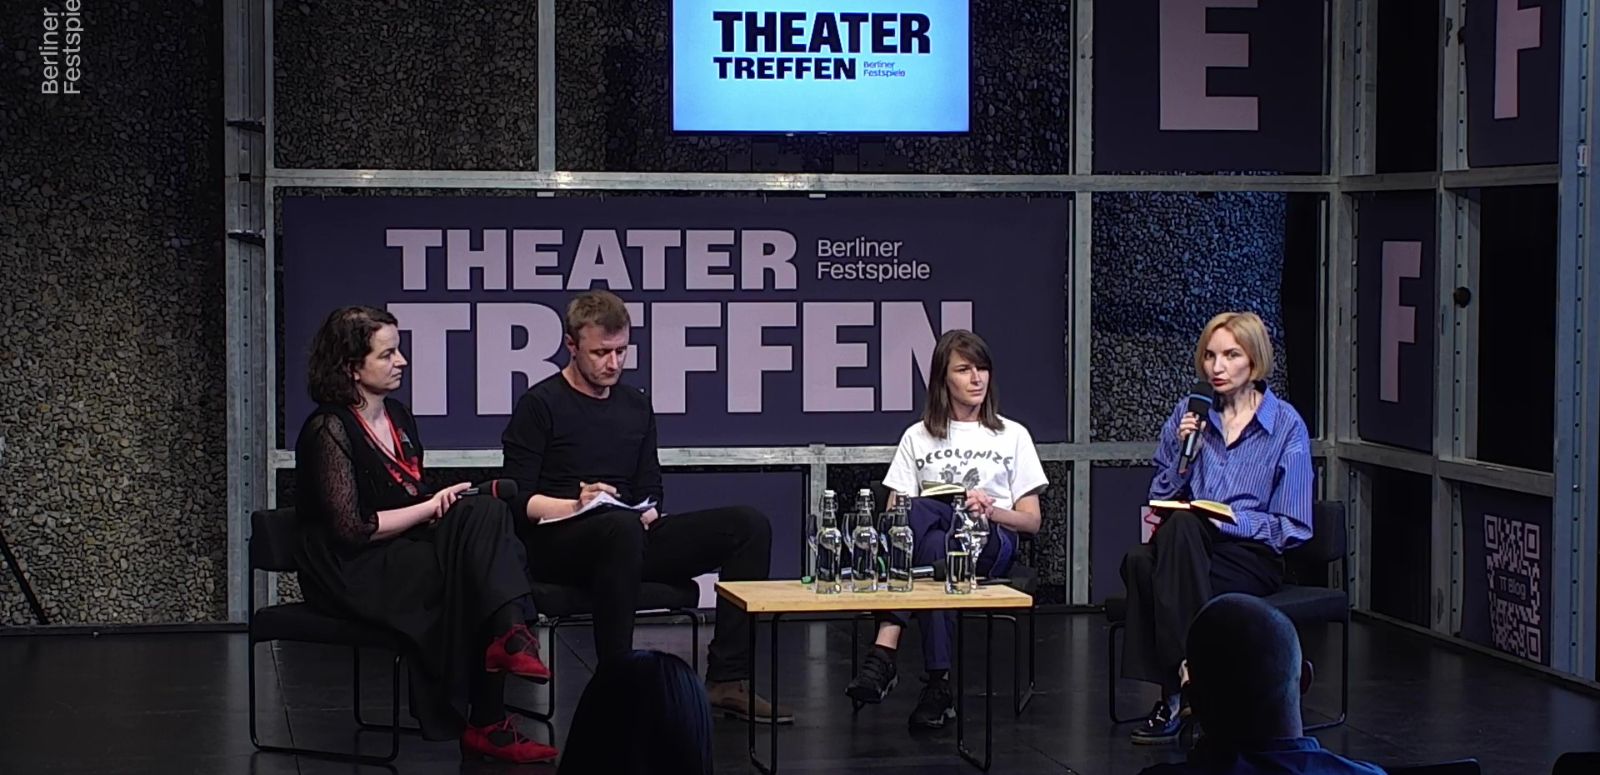 Drei Frauen und ein Mann sitzen um einen kleinen Tisch herum, hinter ihnen der Schriftzug Theatertreffen. Die Frau ganz rechts hat ein Mikrofon in der Hand.